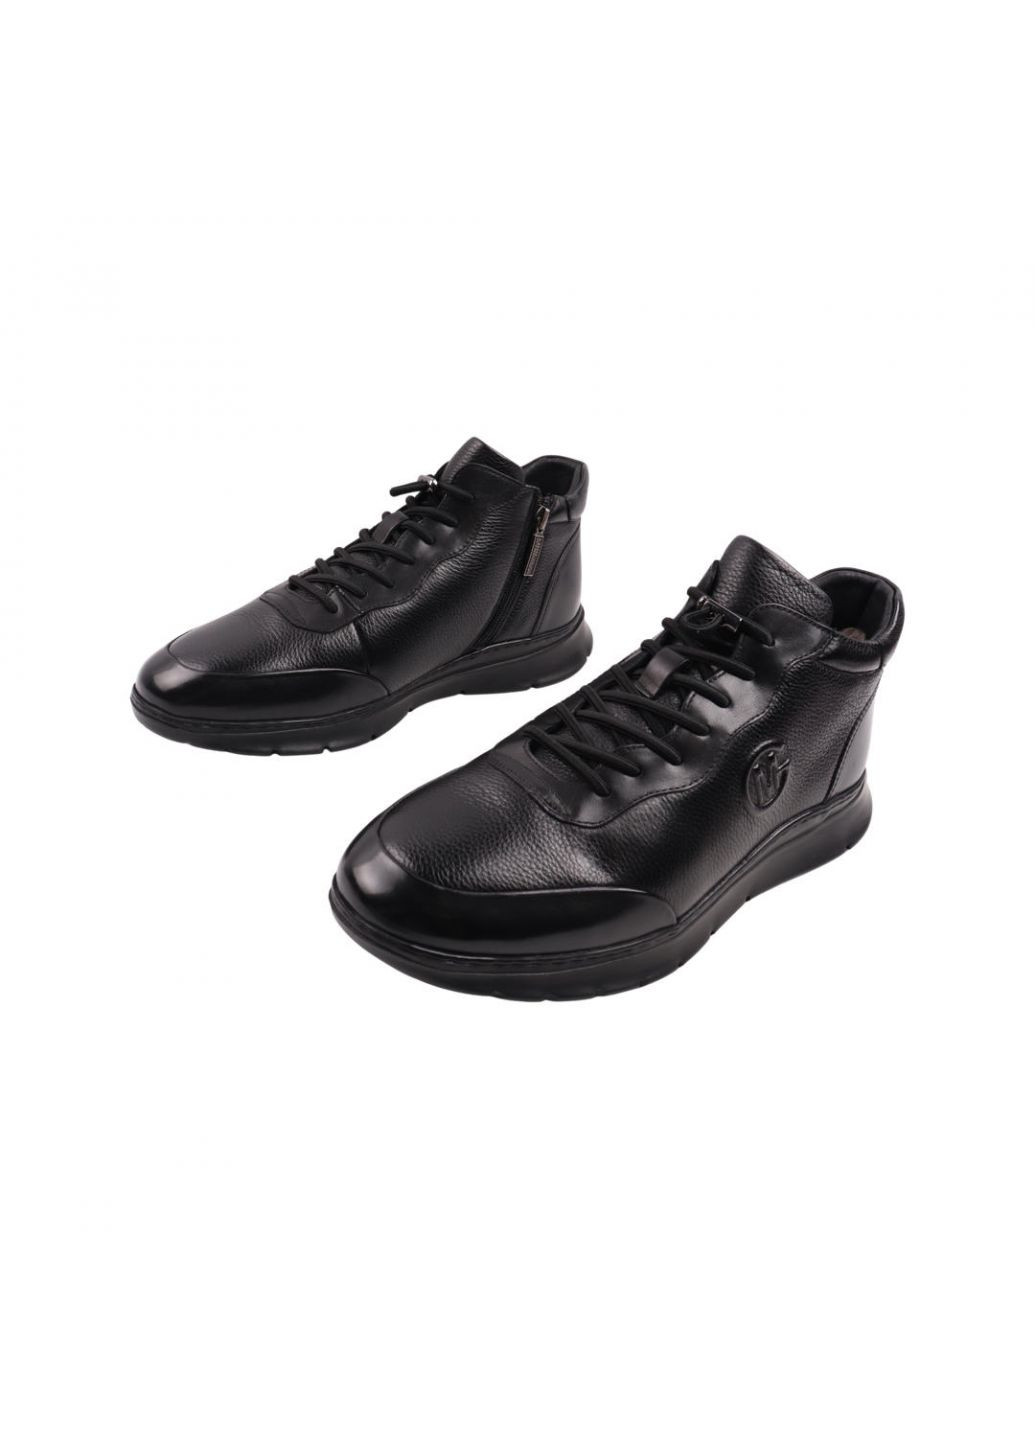 Черные ботинки мужские lido marinozi черные натуральная кожа Lido Marinozzi